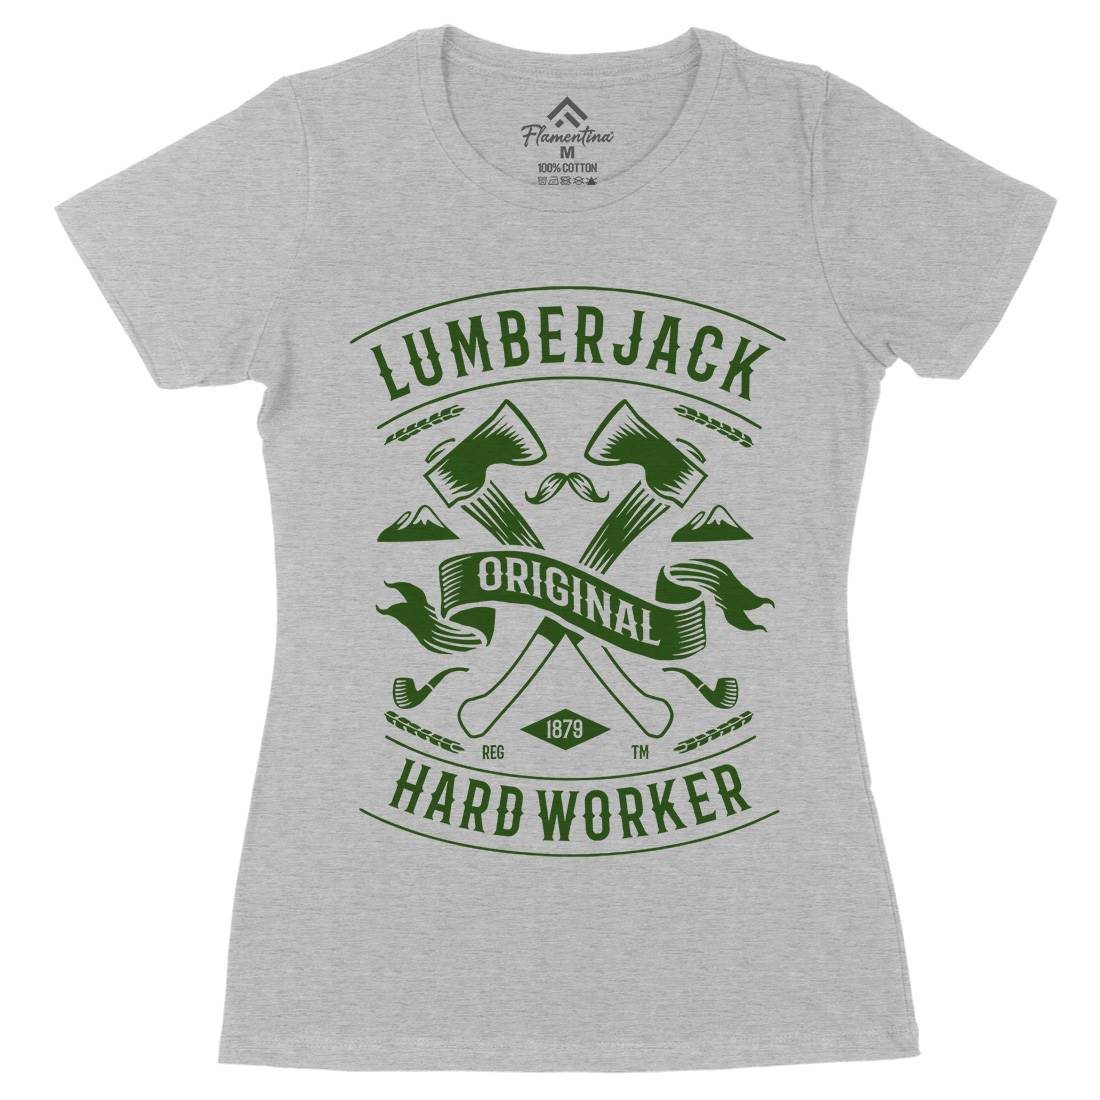 Lumberjack Womens Organic Crew Neck T-Shirt Retro B229